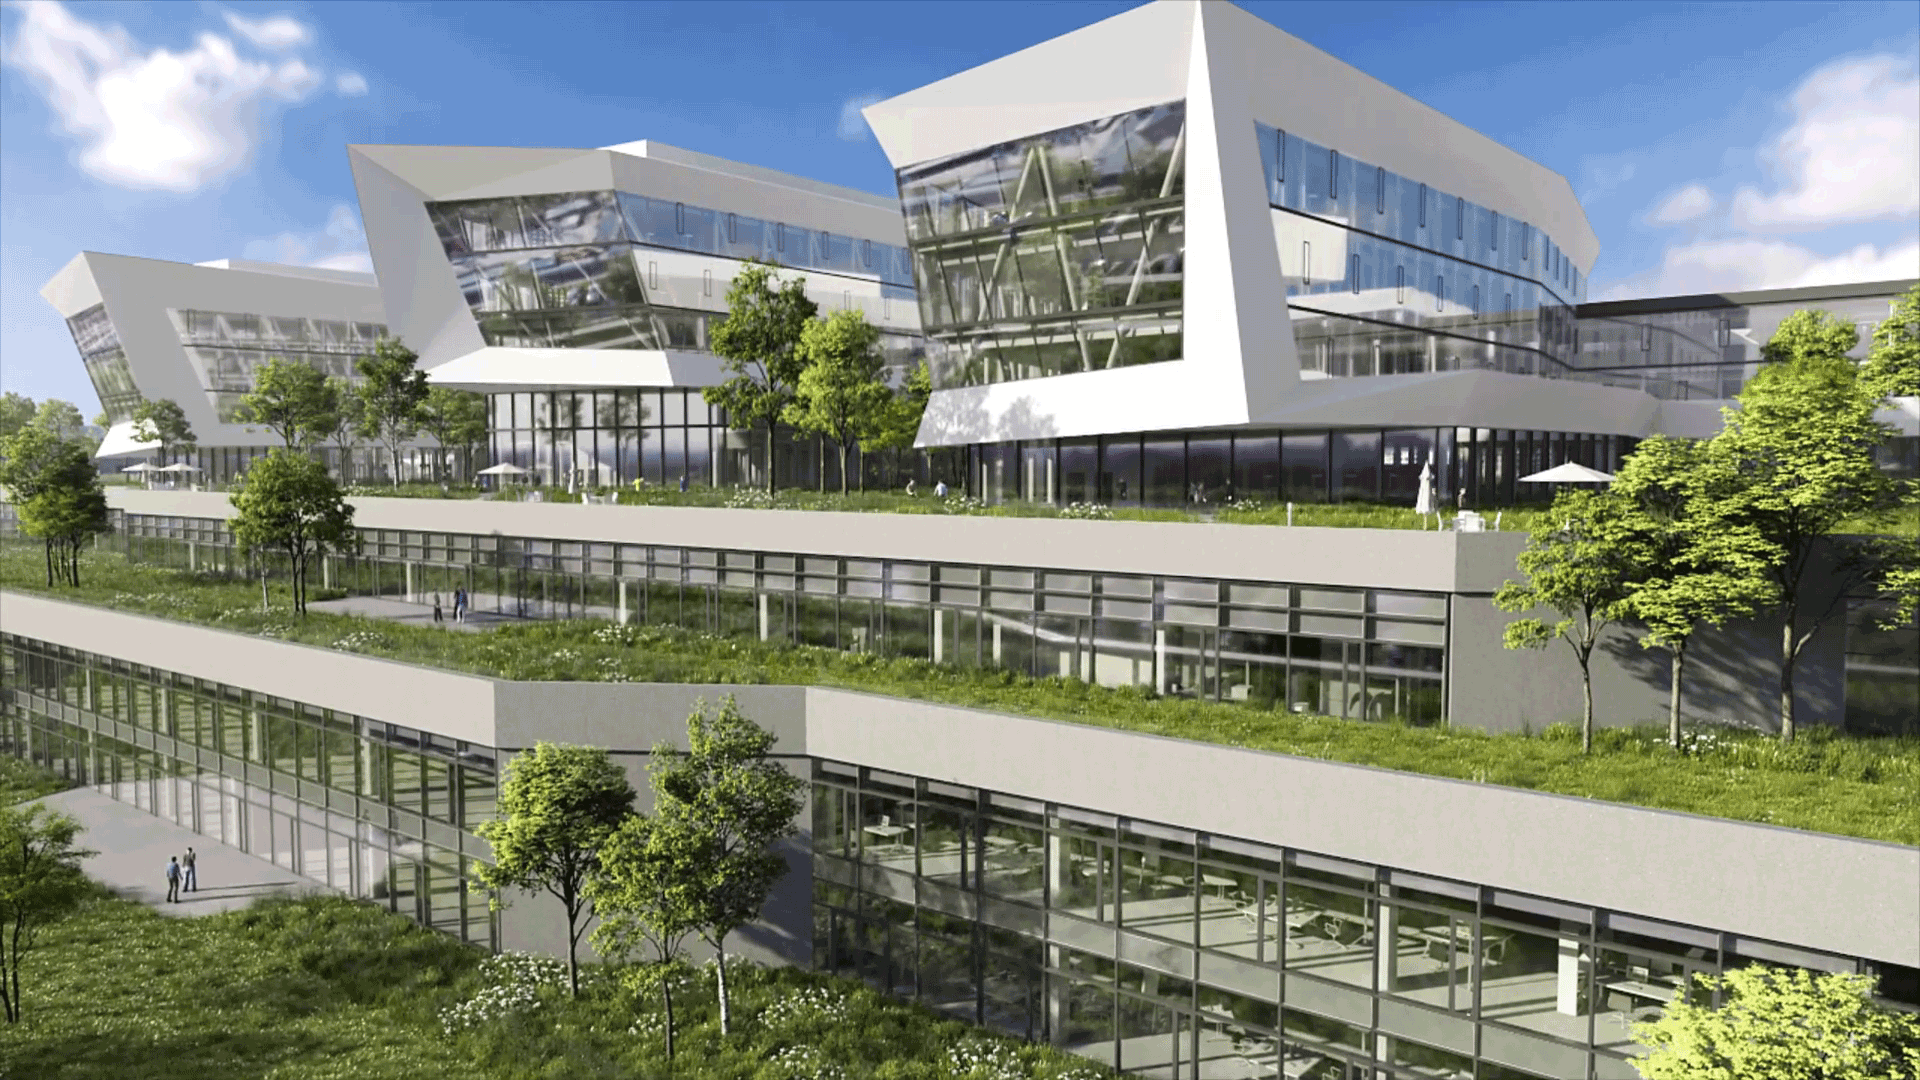 Blick in die Zukunft des neuen ZEISS Hightech-Standorts Jena